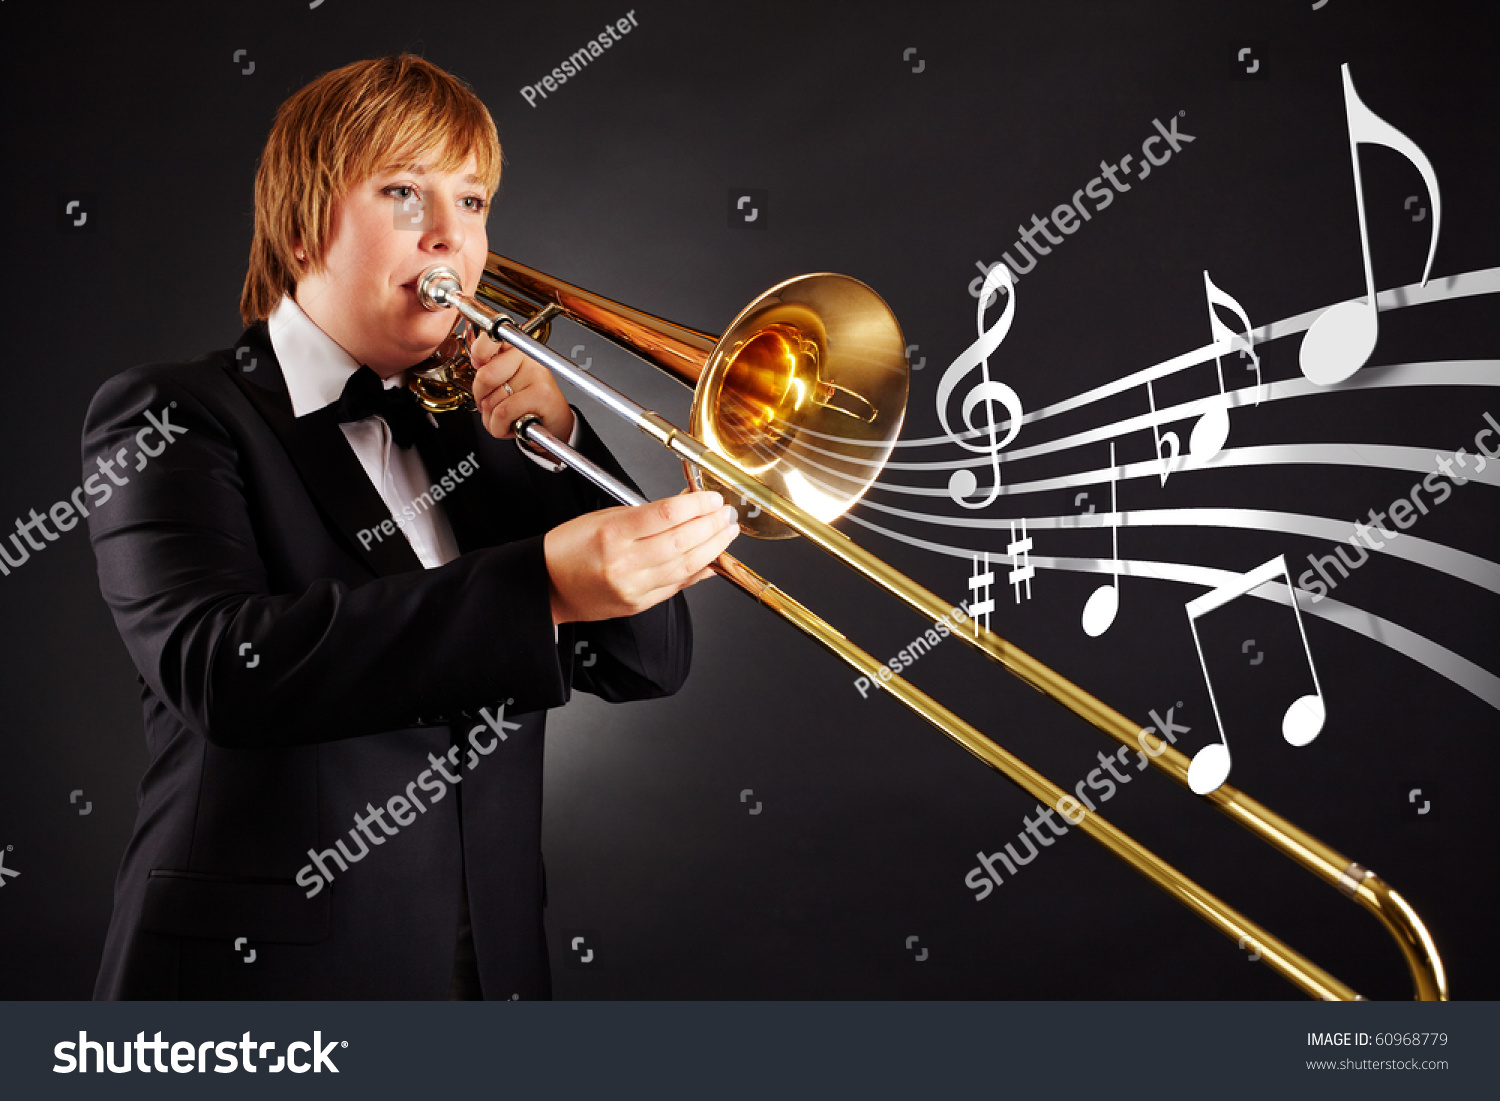 Будучи гениальным музыкантом. Поющие трубы. Труба для пения. Музыканты Медно-духовой группы картинка. Тромбон и саксофон.